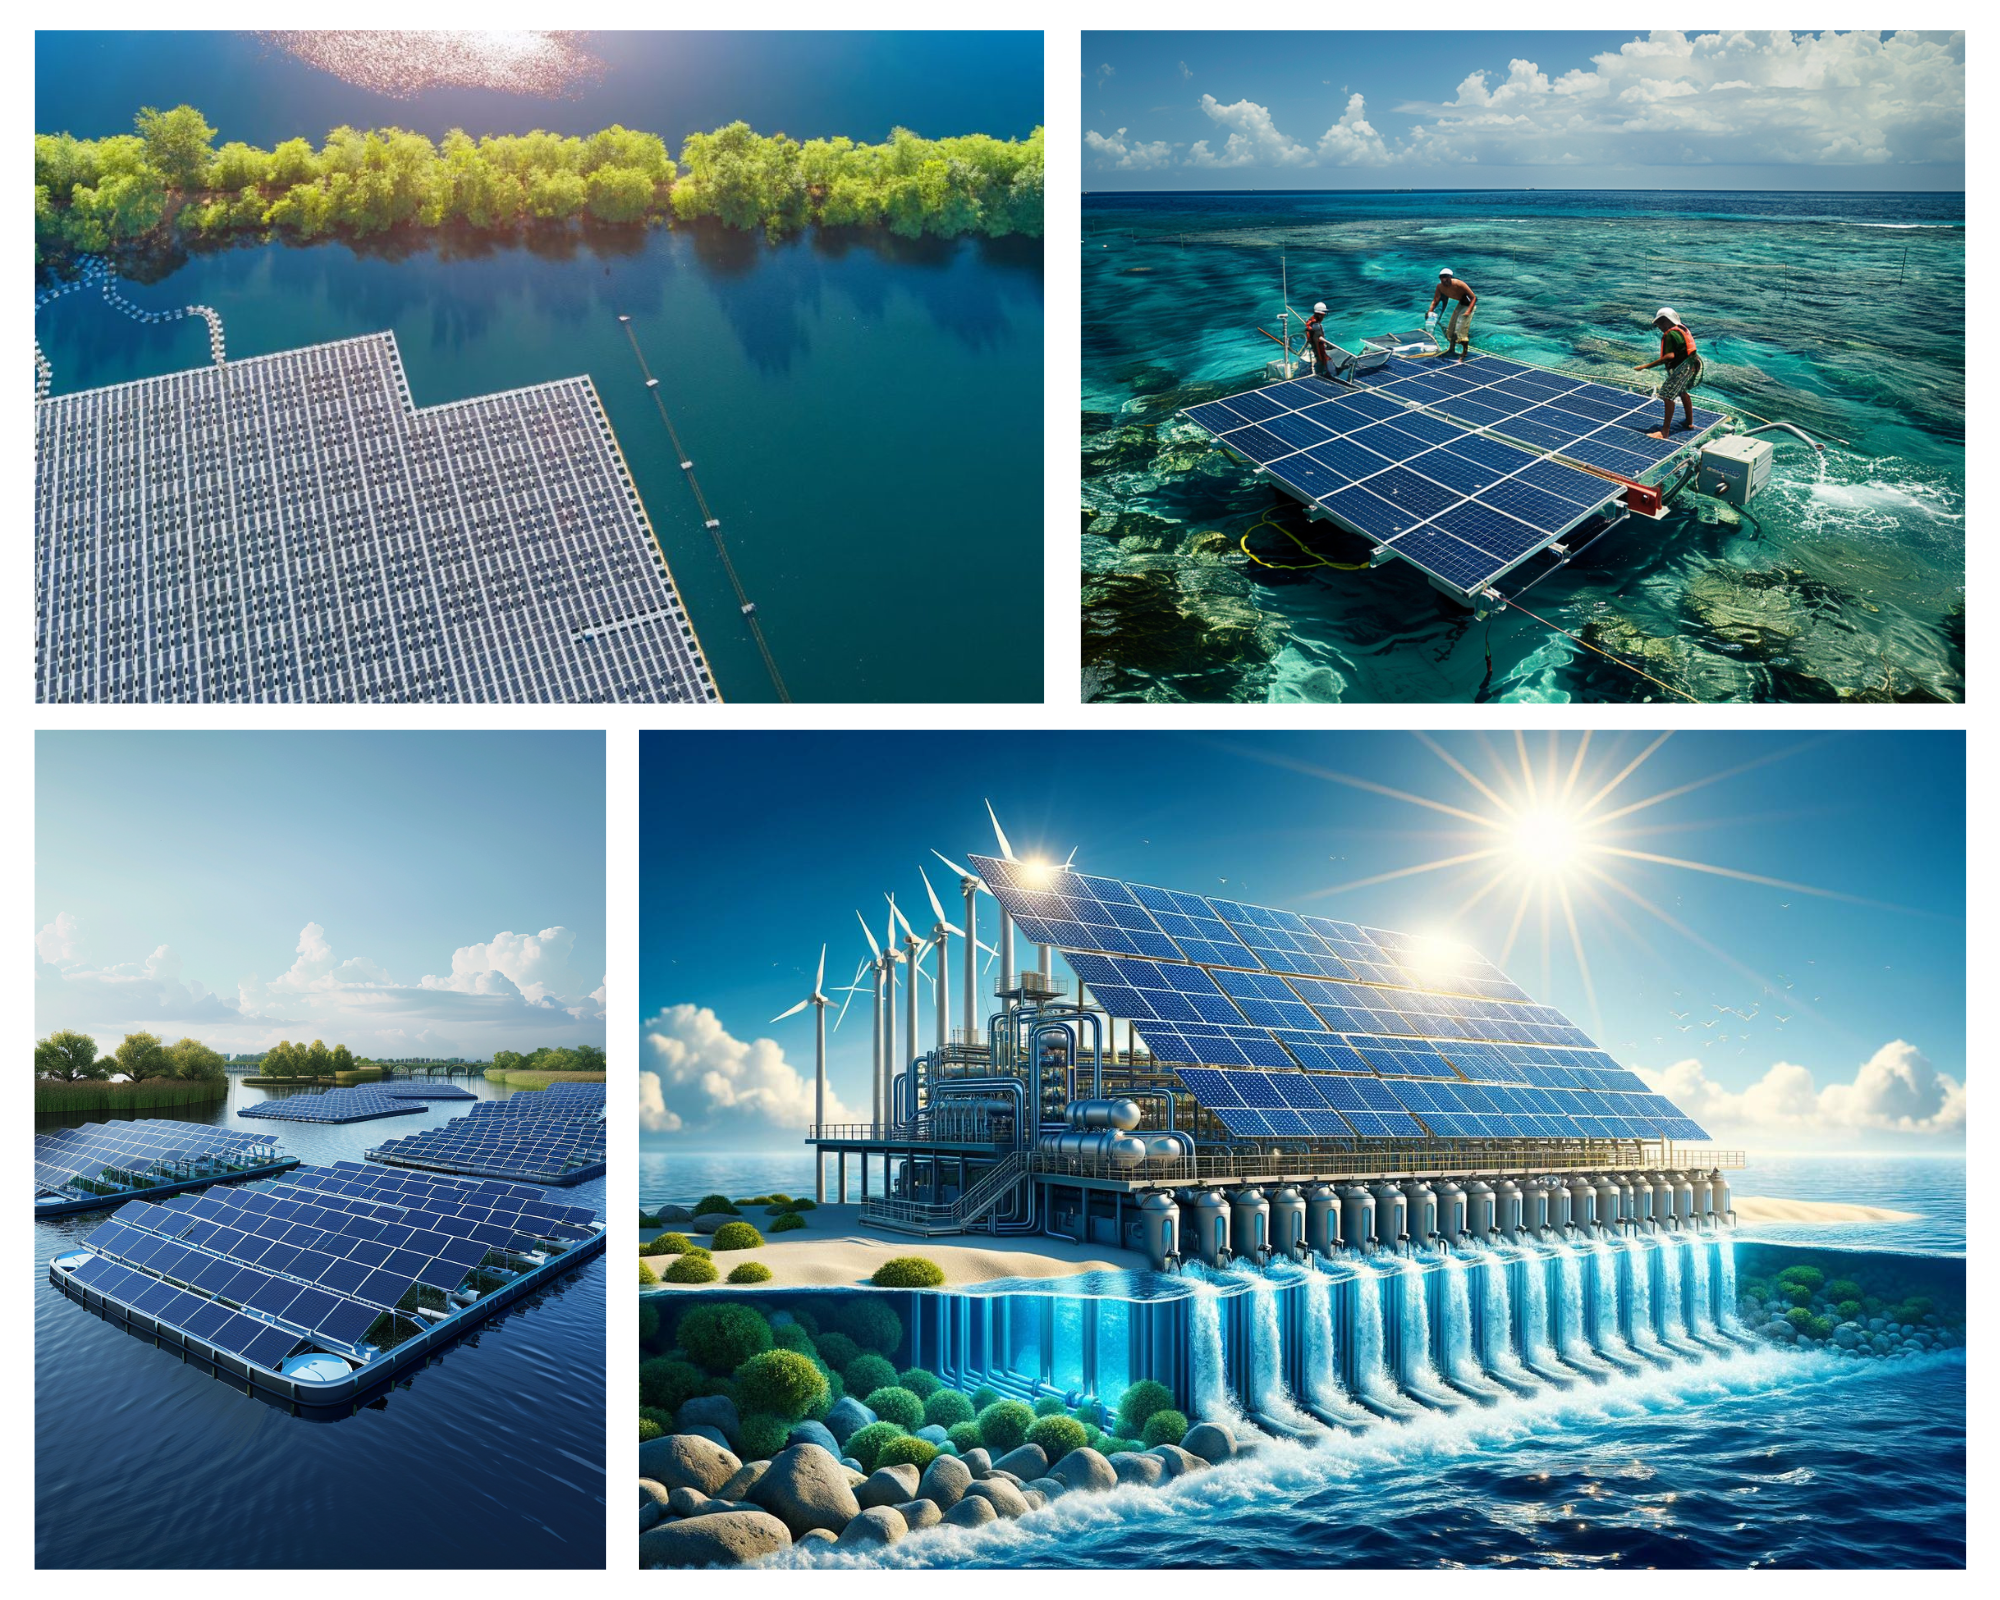 Giải pháp nước sạch toàn cầu: Ứng dụng năng lượng mặt trời trong lọc nước biển